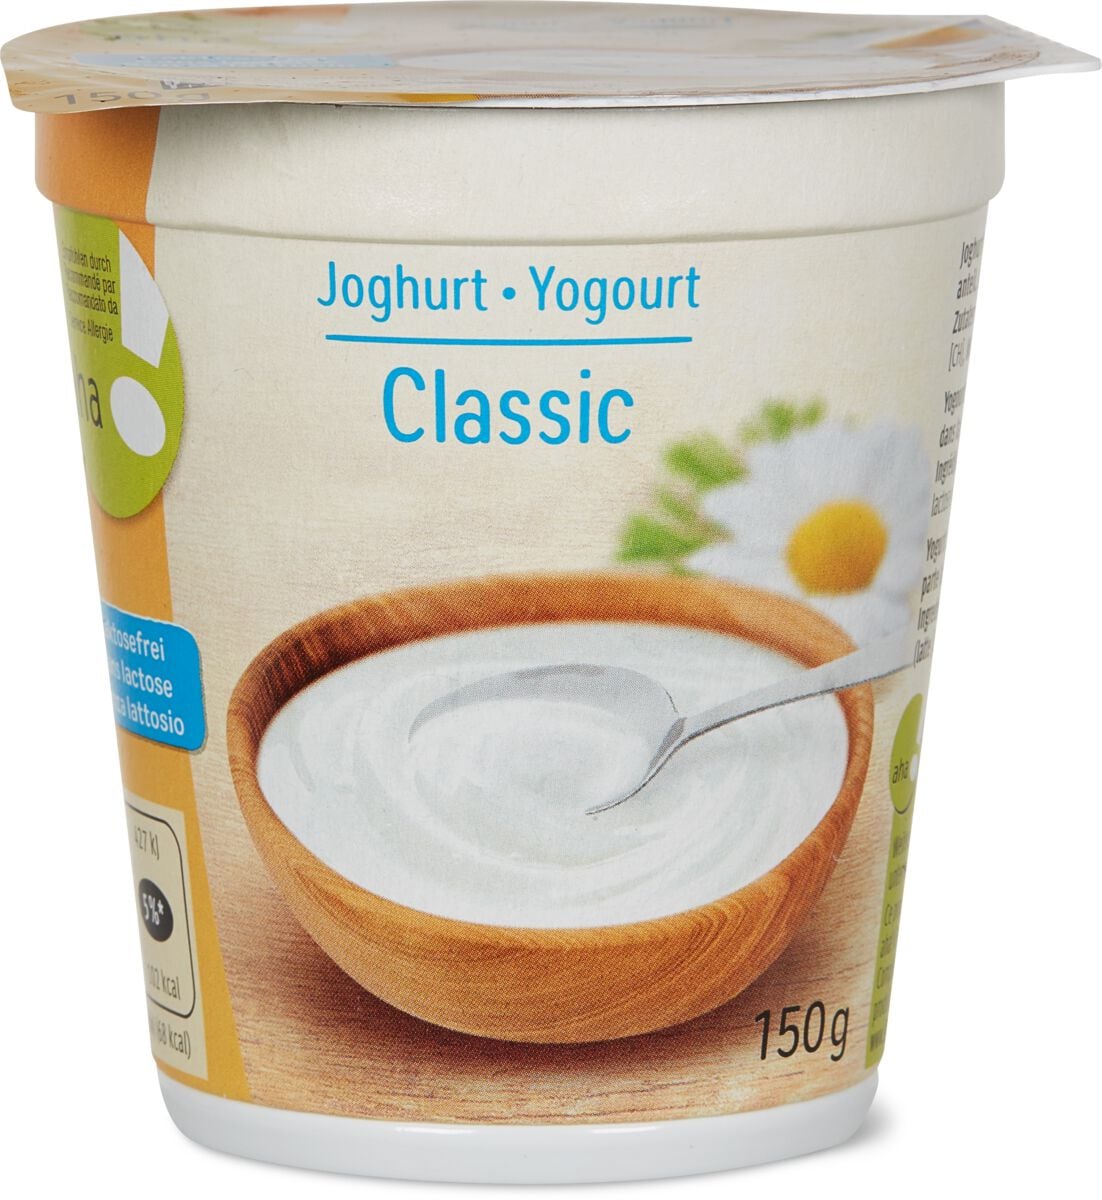 Joghurt Classic laktosefrei aha!